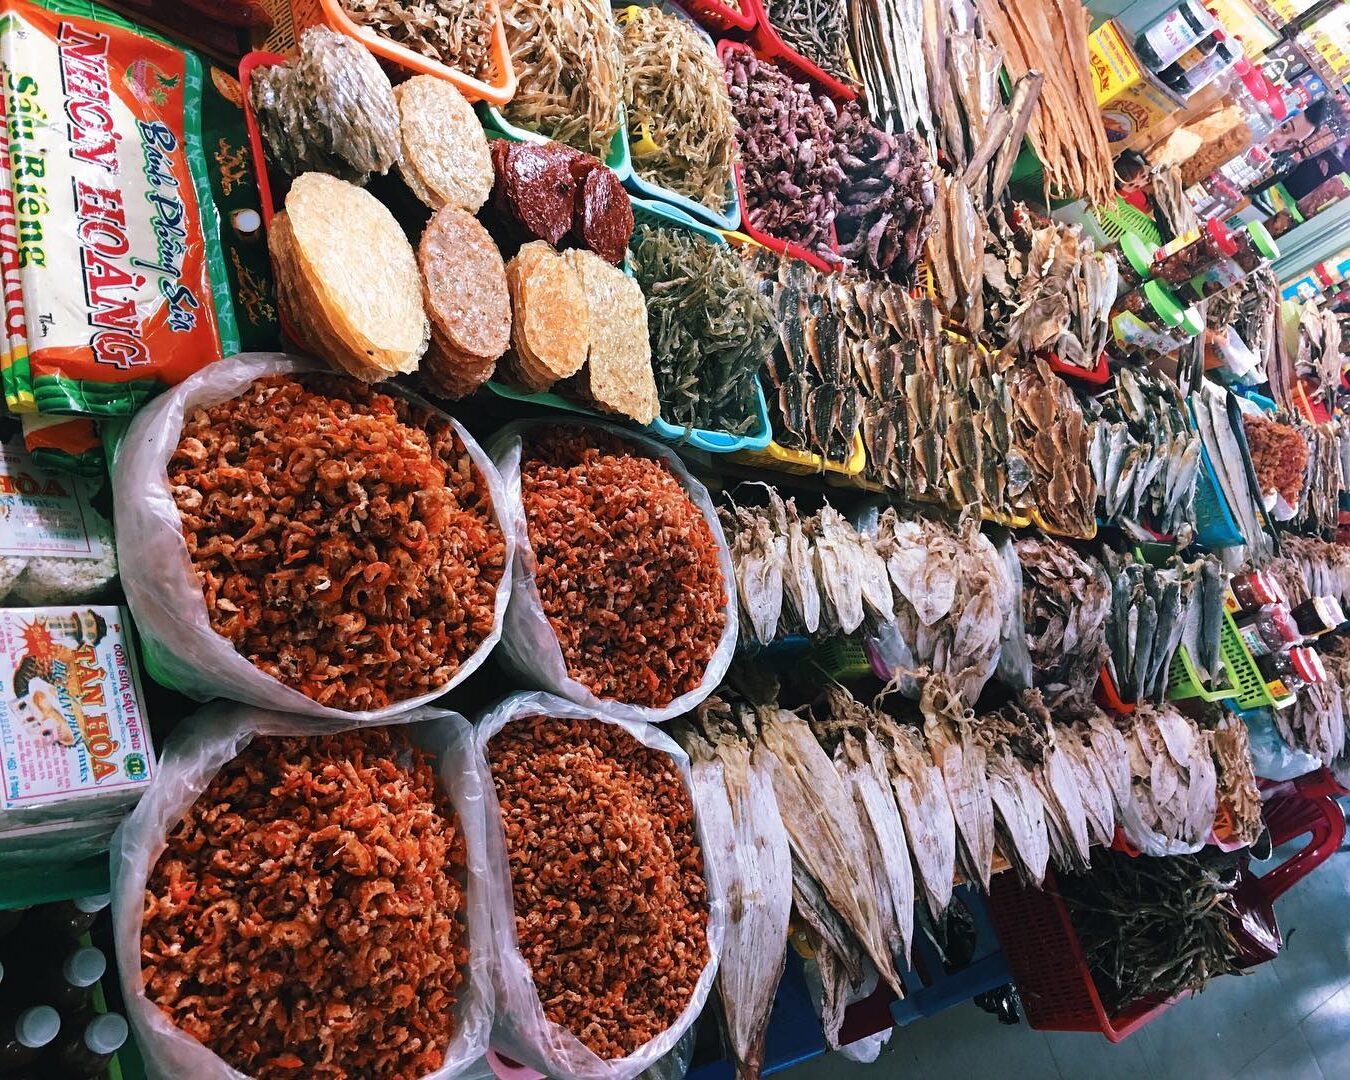 Khám phá chợ Phan Thiết - Cái nôi văn hoá, ẩm thực đặc sắc